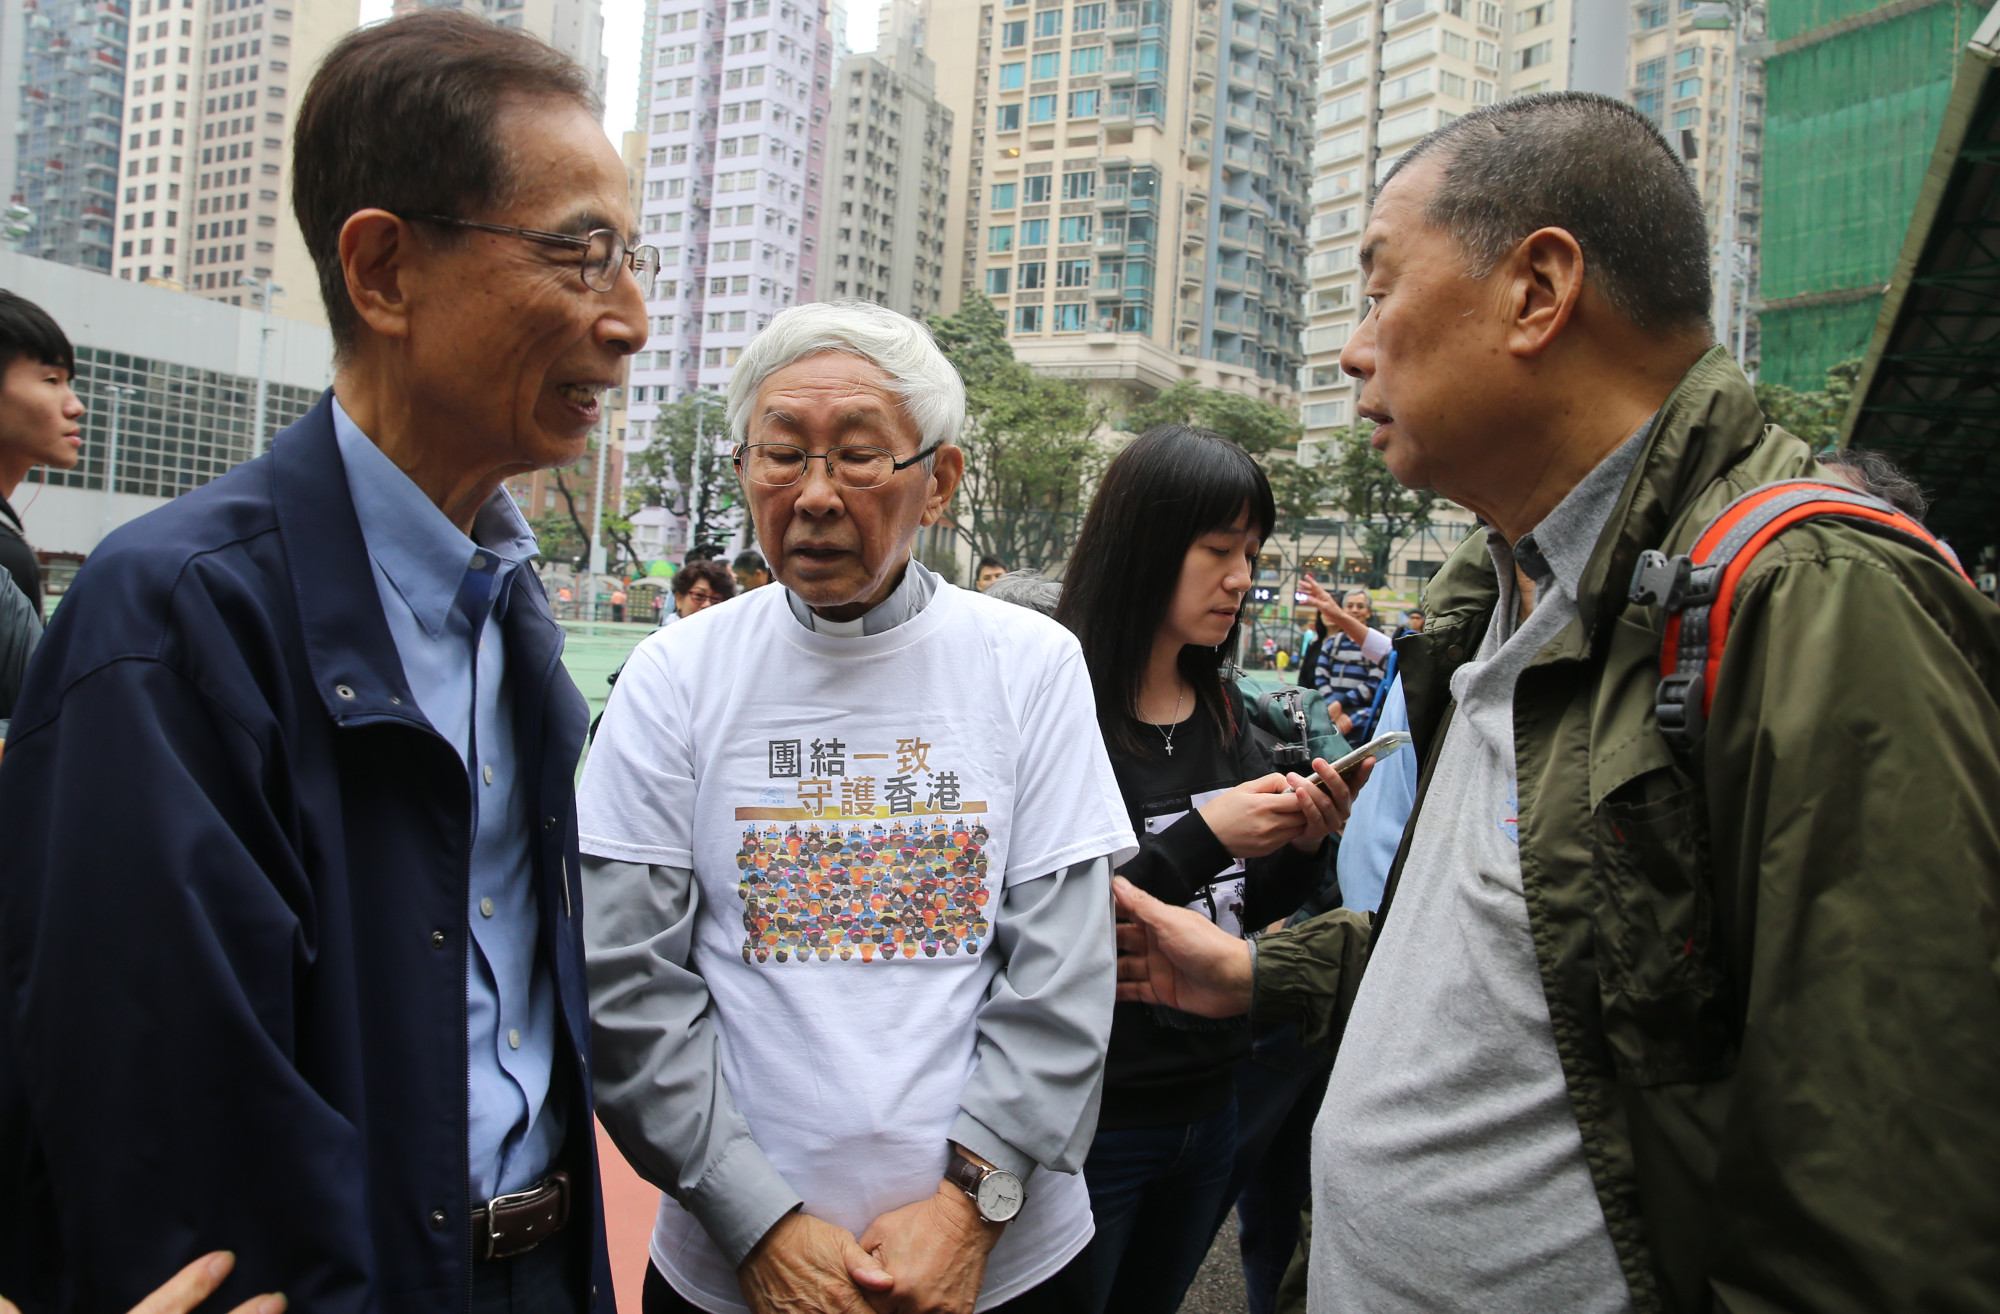 La corte ha sentito che Jimmy Lai ha dato significativi contributi finanziari all'opposizione di Hong Kong e ai gruppi politici statunitensi prima di fermare la legge sulla sicurezza nazionale.